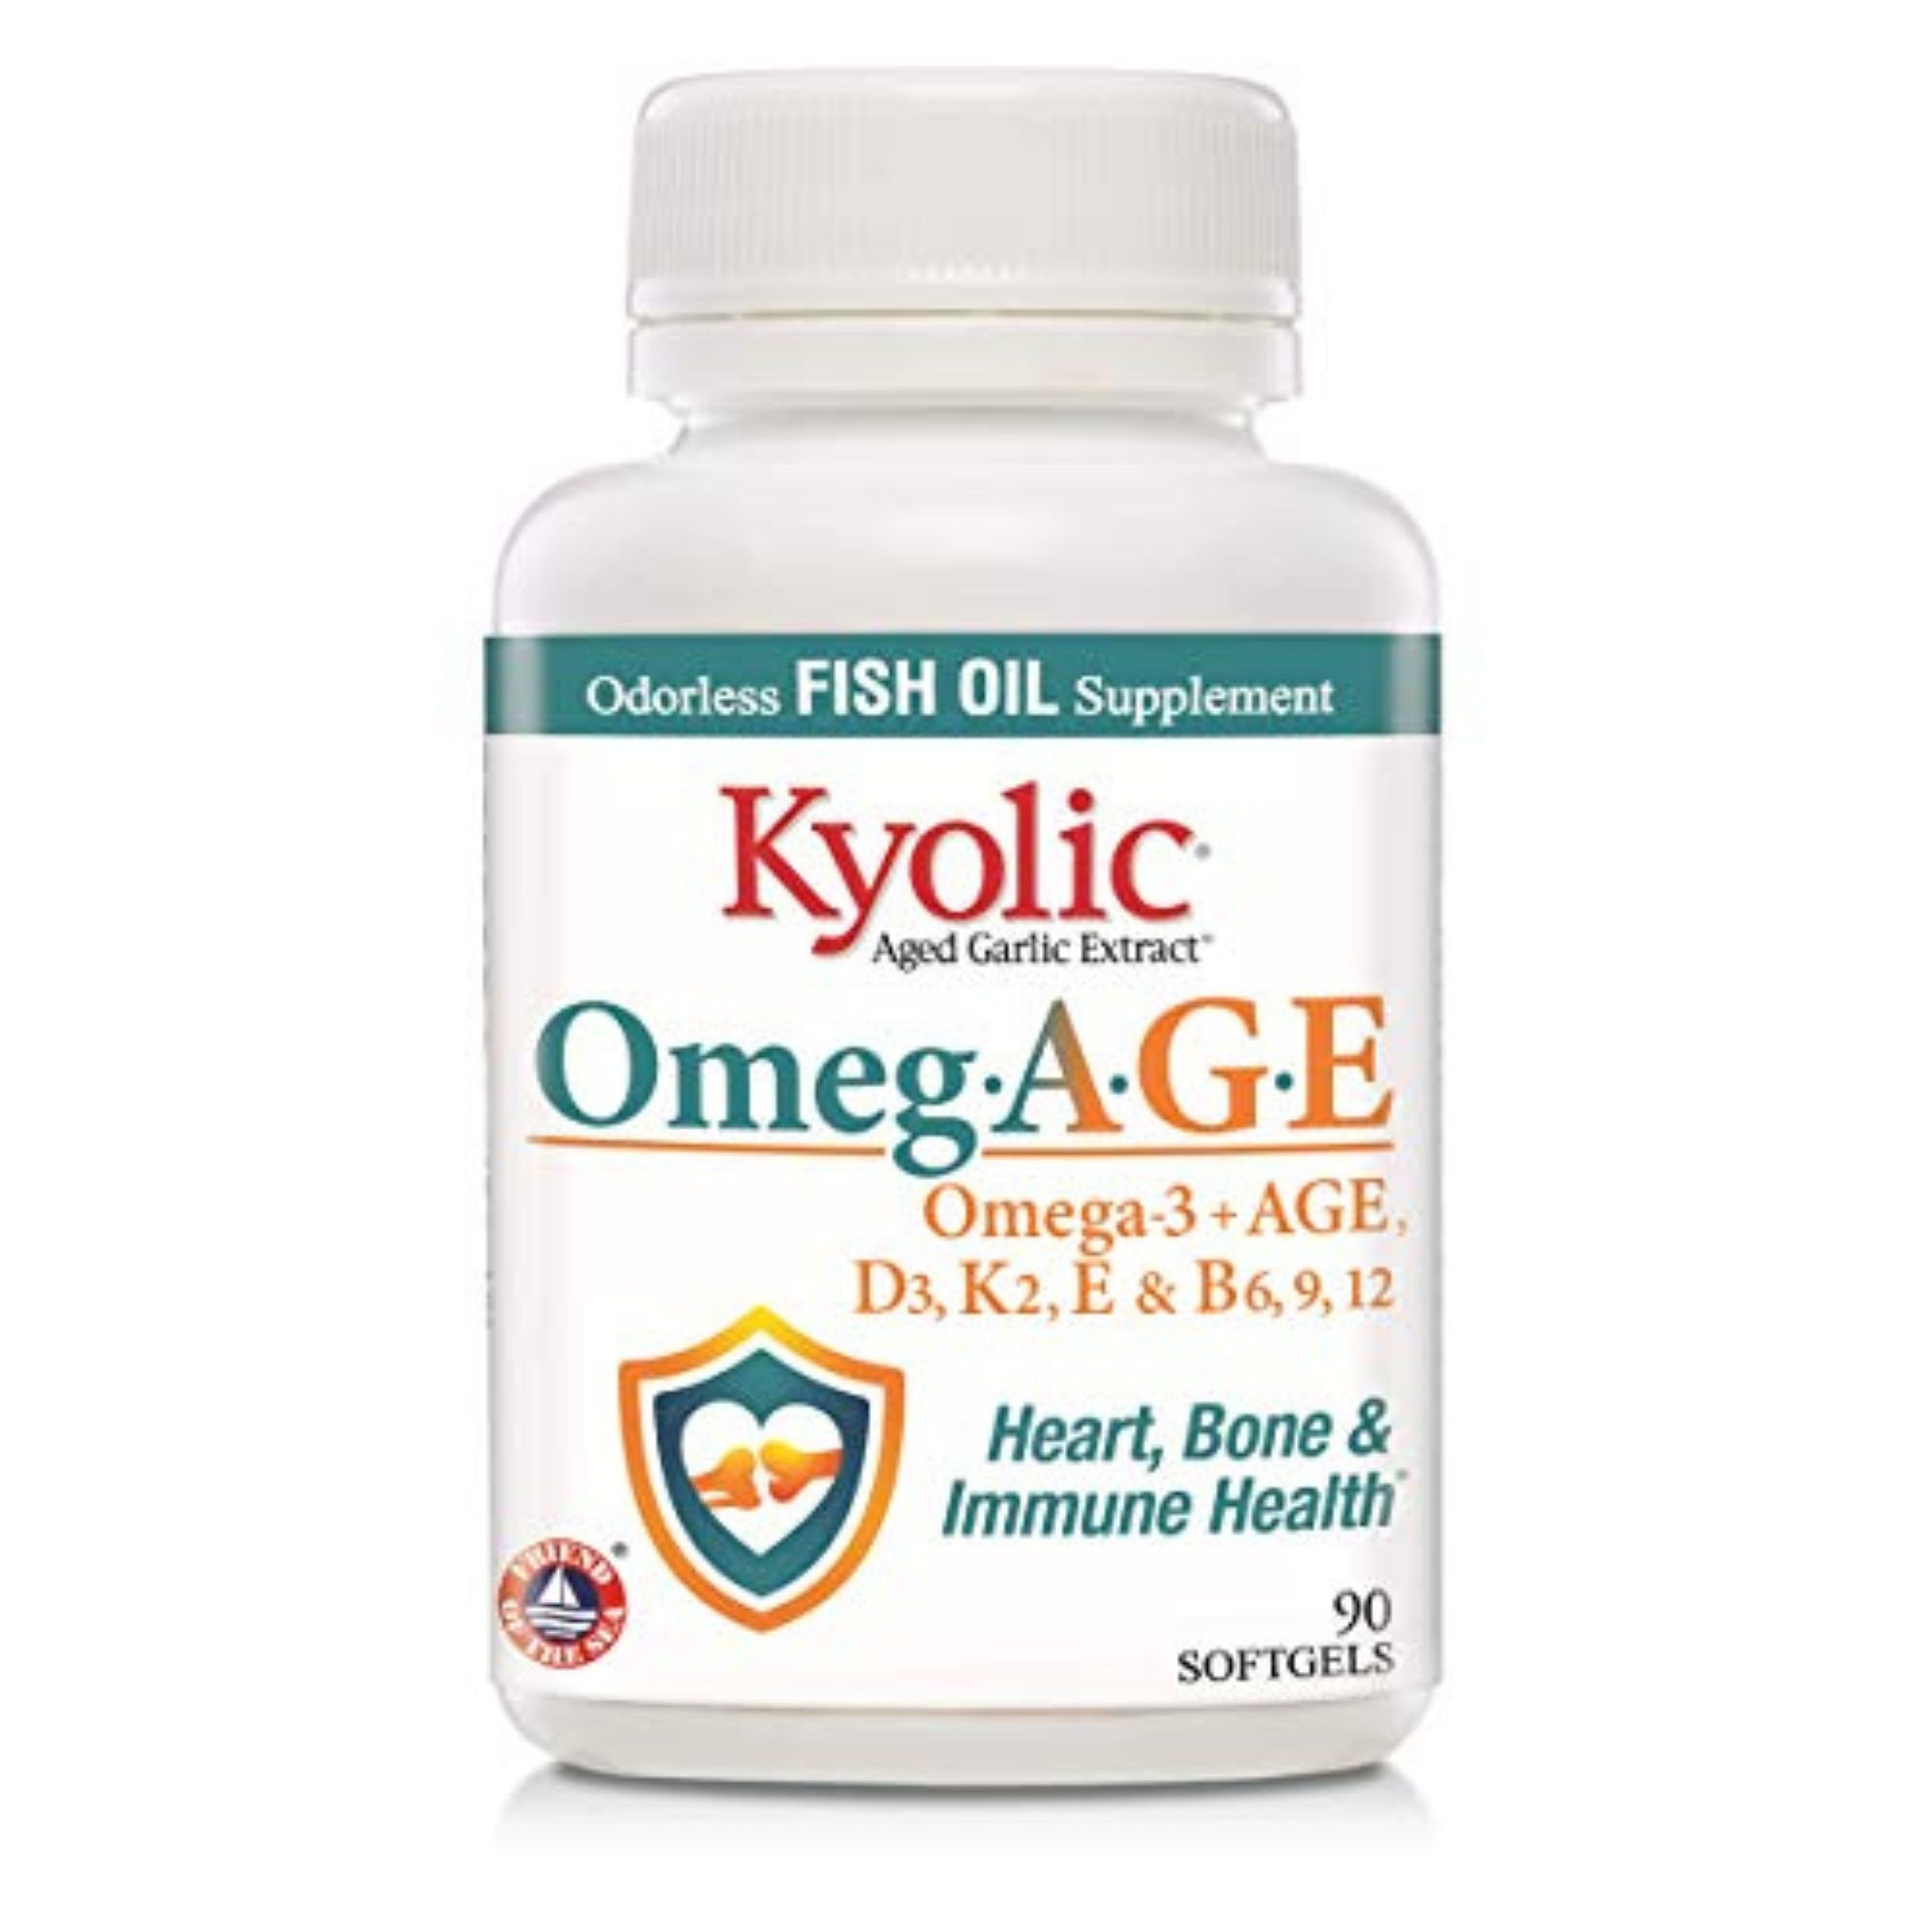 Kyolic Omeg-Age, Heart, Bone & Immune Health, 90 Count Softgels